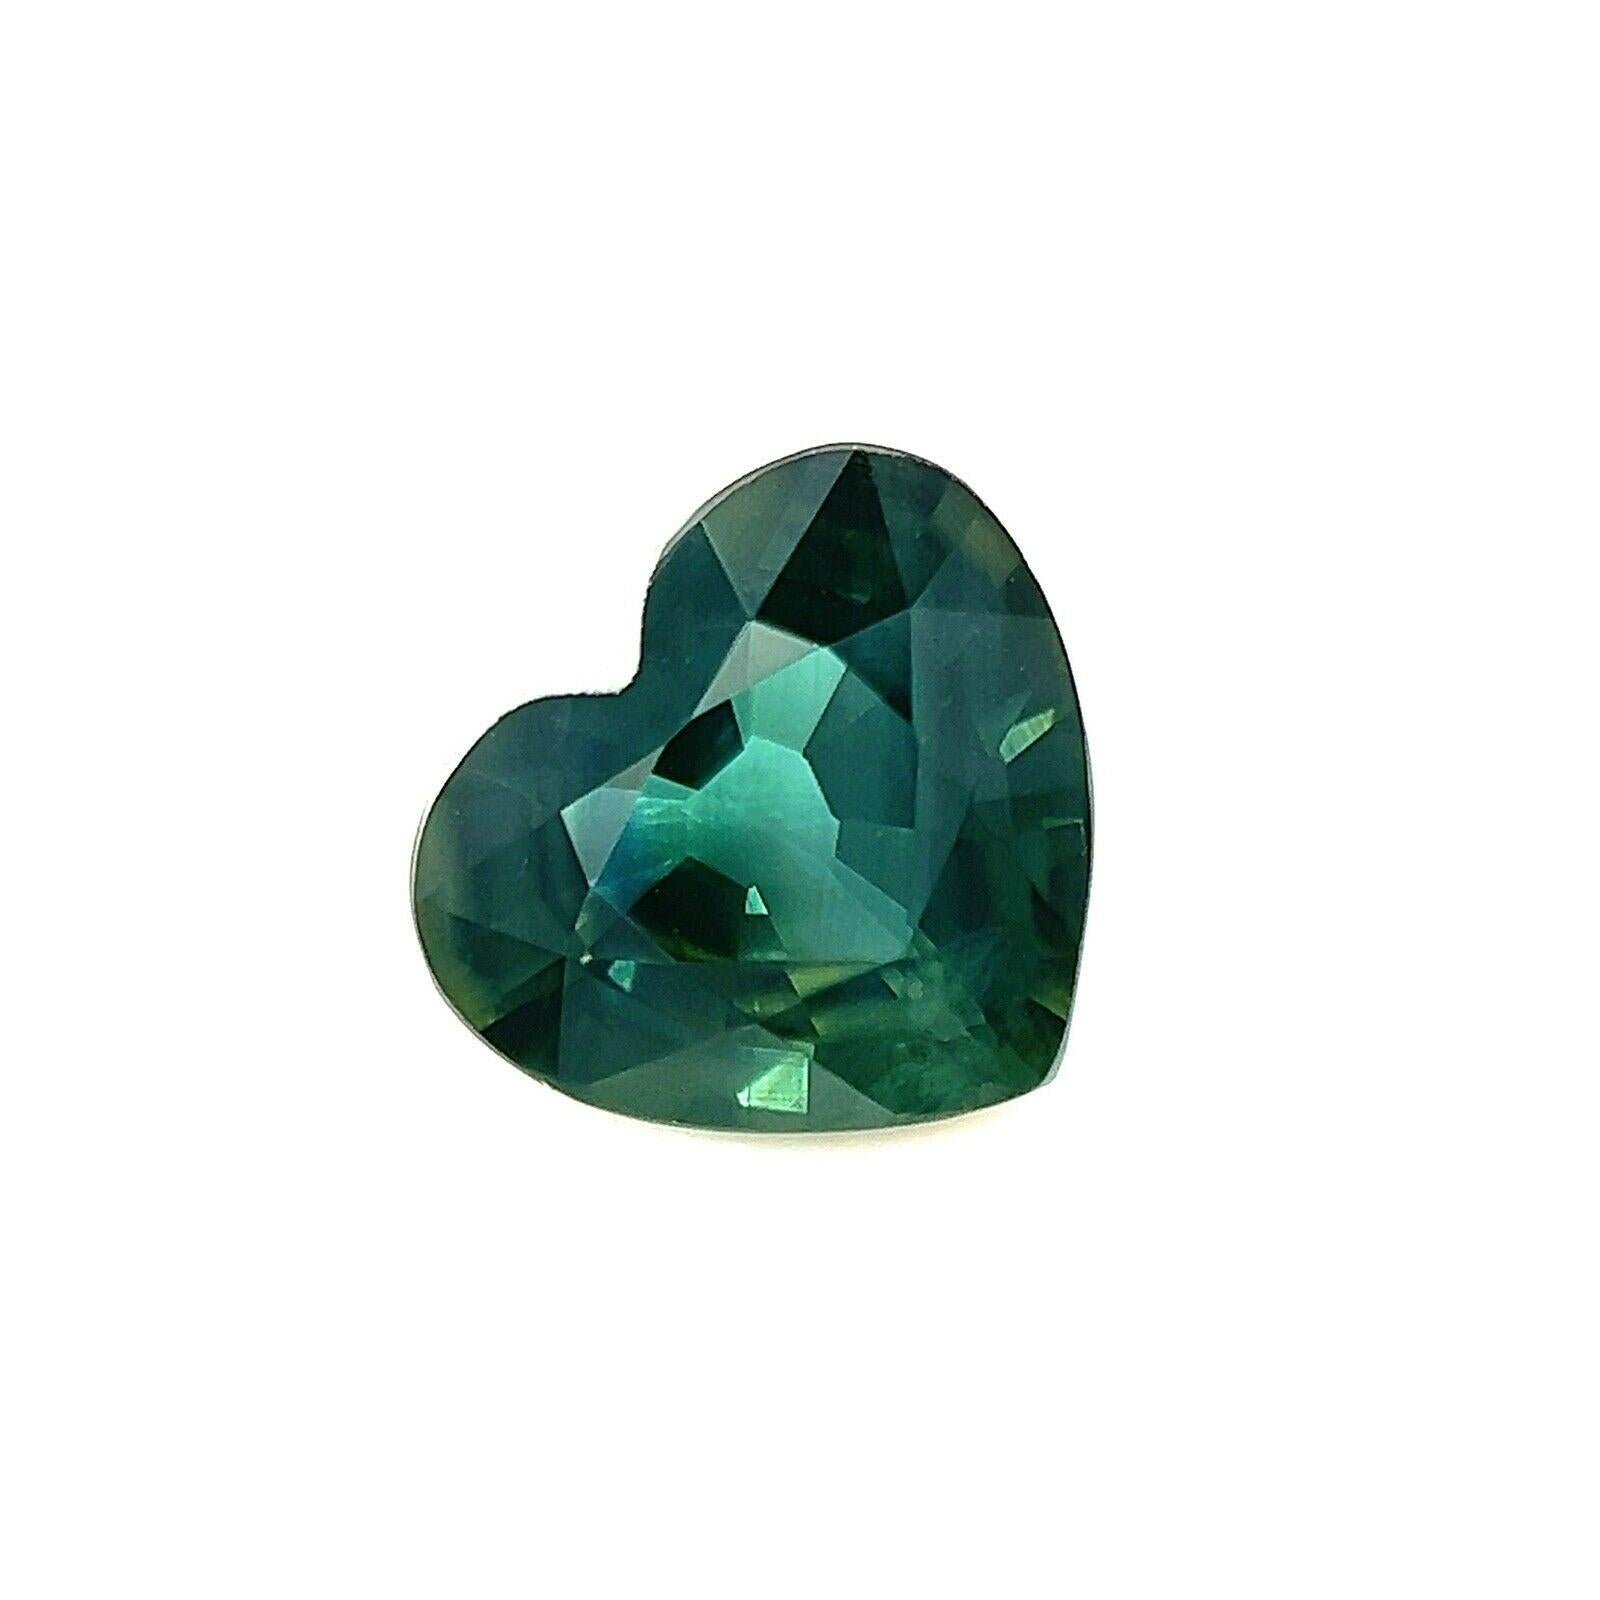 Feiner 1,04ct australischer tiefgrüner blauer Saphir Herzschliff seltener Edelstein 7x6,2mm

Natürlicher grünblauer australischer Saphir Edelstein.
1.04 Karat mit einer schönen tief grünblauen Farbe. Hat sehr gute Klarheit, eine sehr saubere Stein